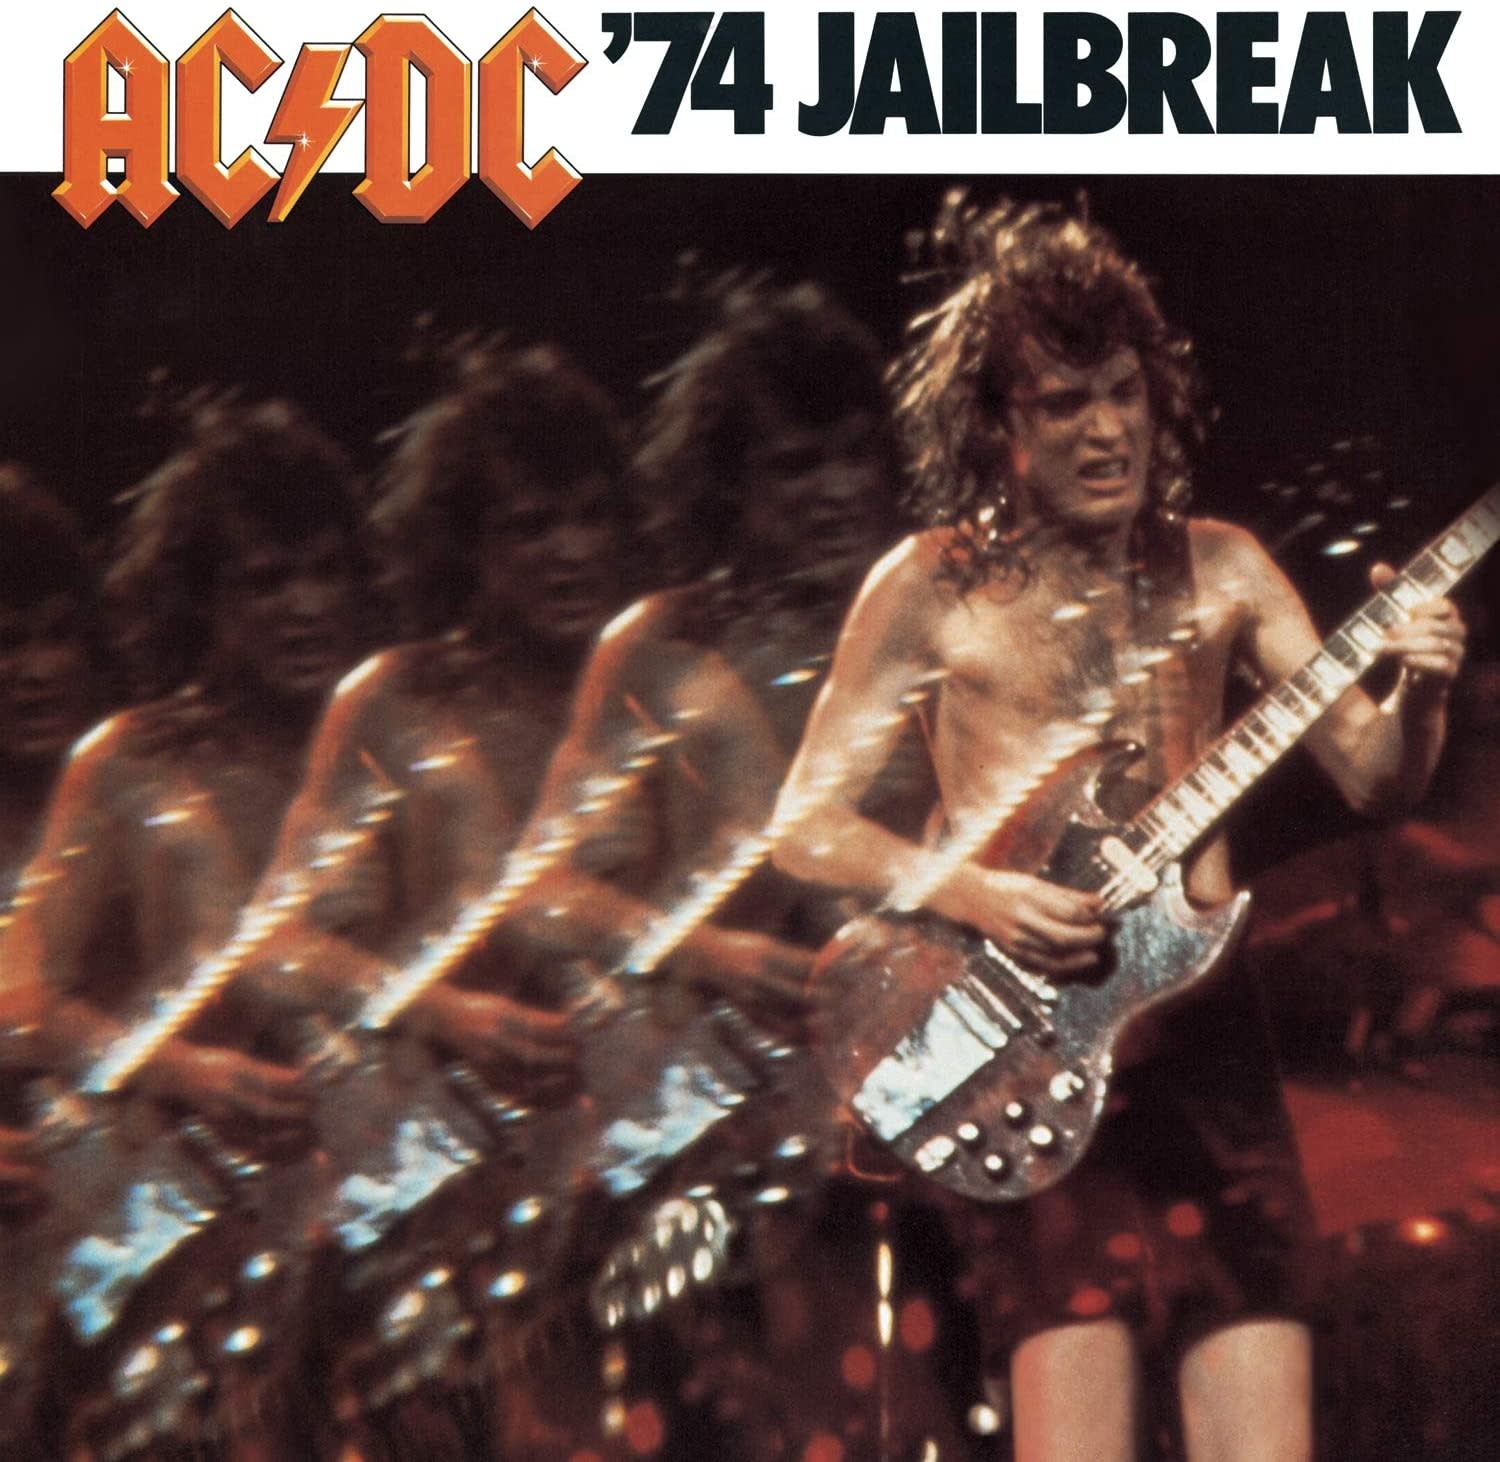 AC/DC – '74 Jailbreak